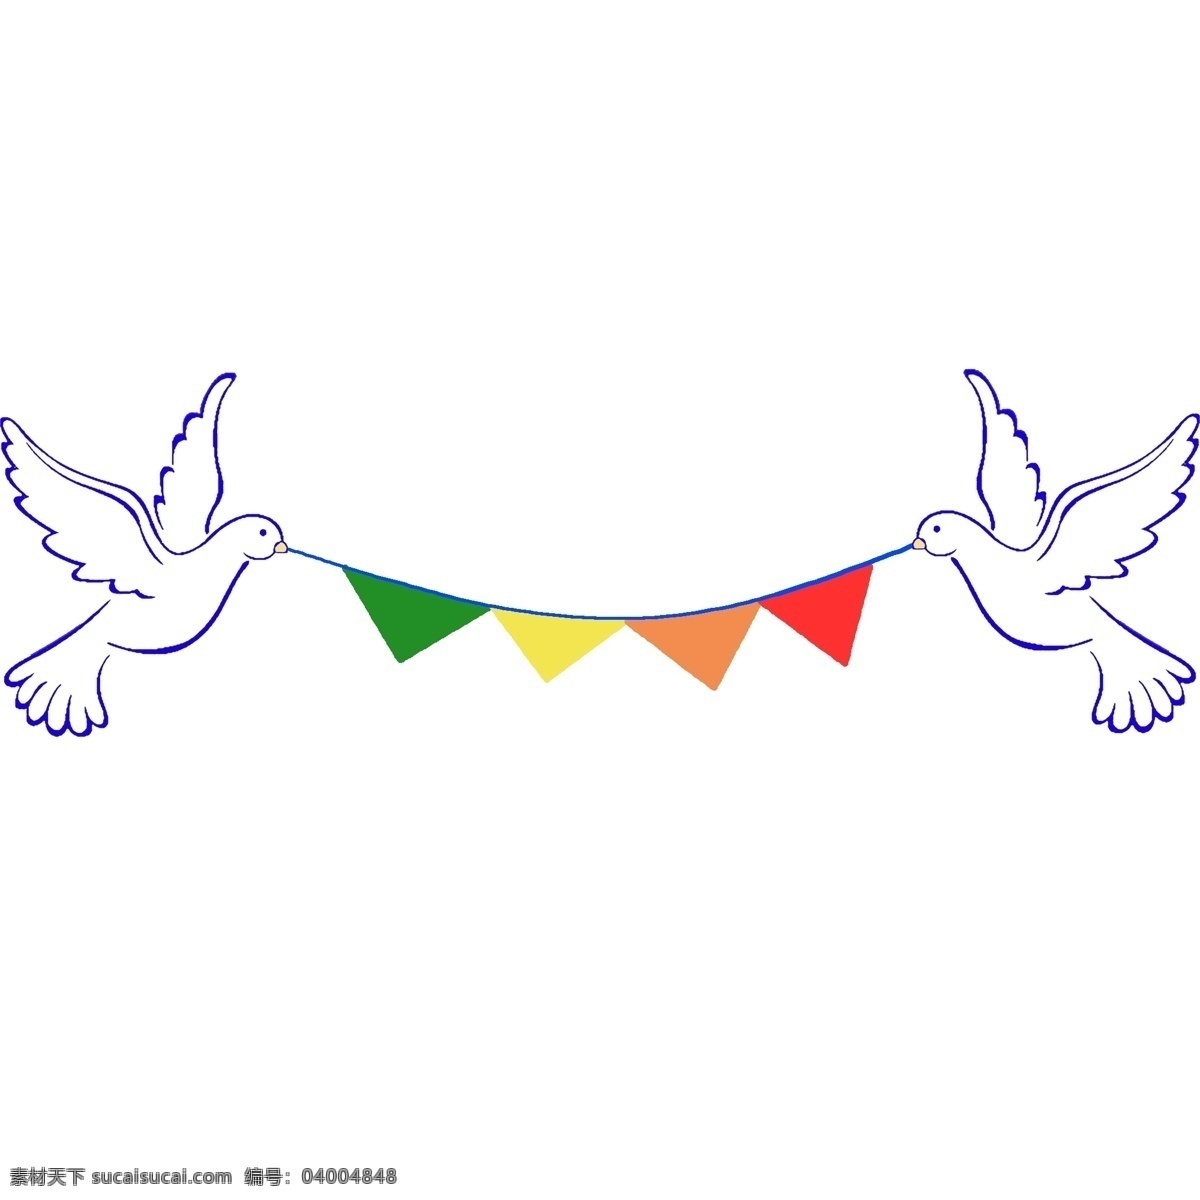 手绘 鸽子 分割线 插画 白色的鸽子 卡通插画 手绘插画 分割线插画 鸽子分割线 和平的鸽子 飞翔的鸽子